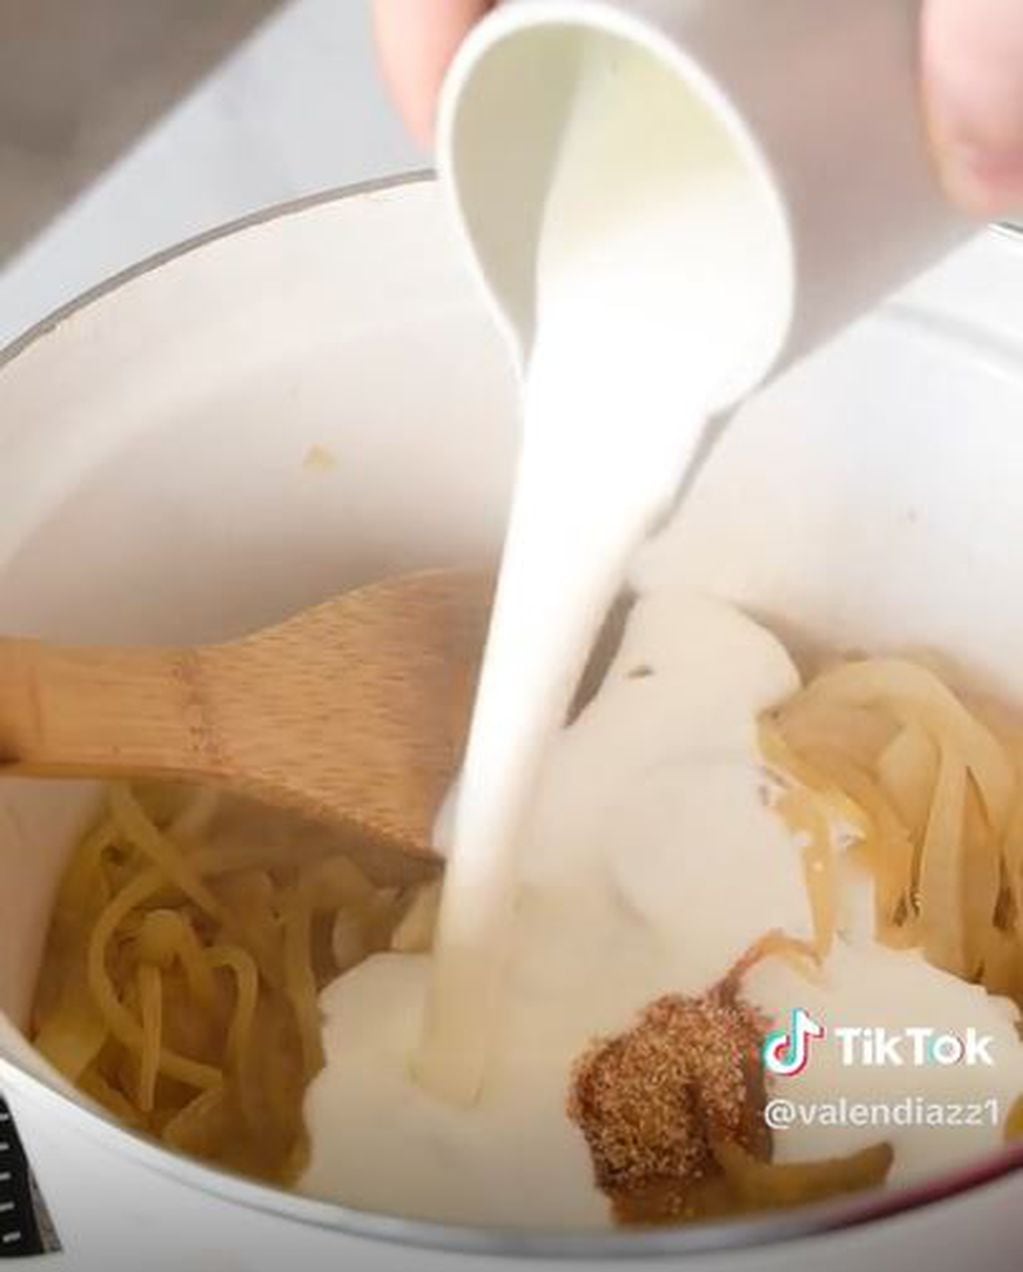 Receta fácil y rápida: cómo preparar pasta con cebolla caramelizada en simples pasos y con pocos ingredientes